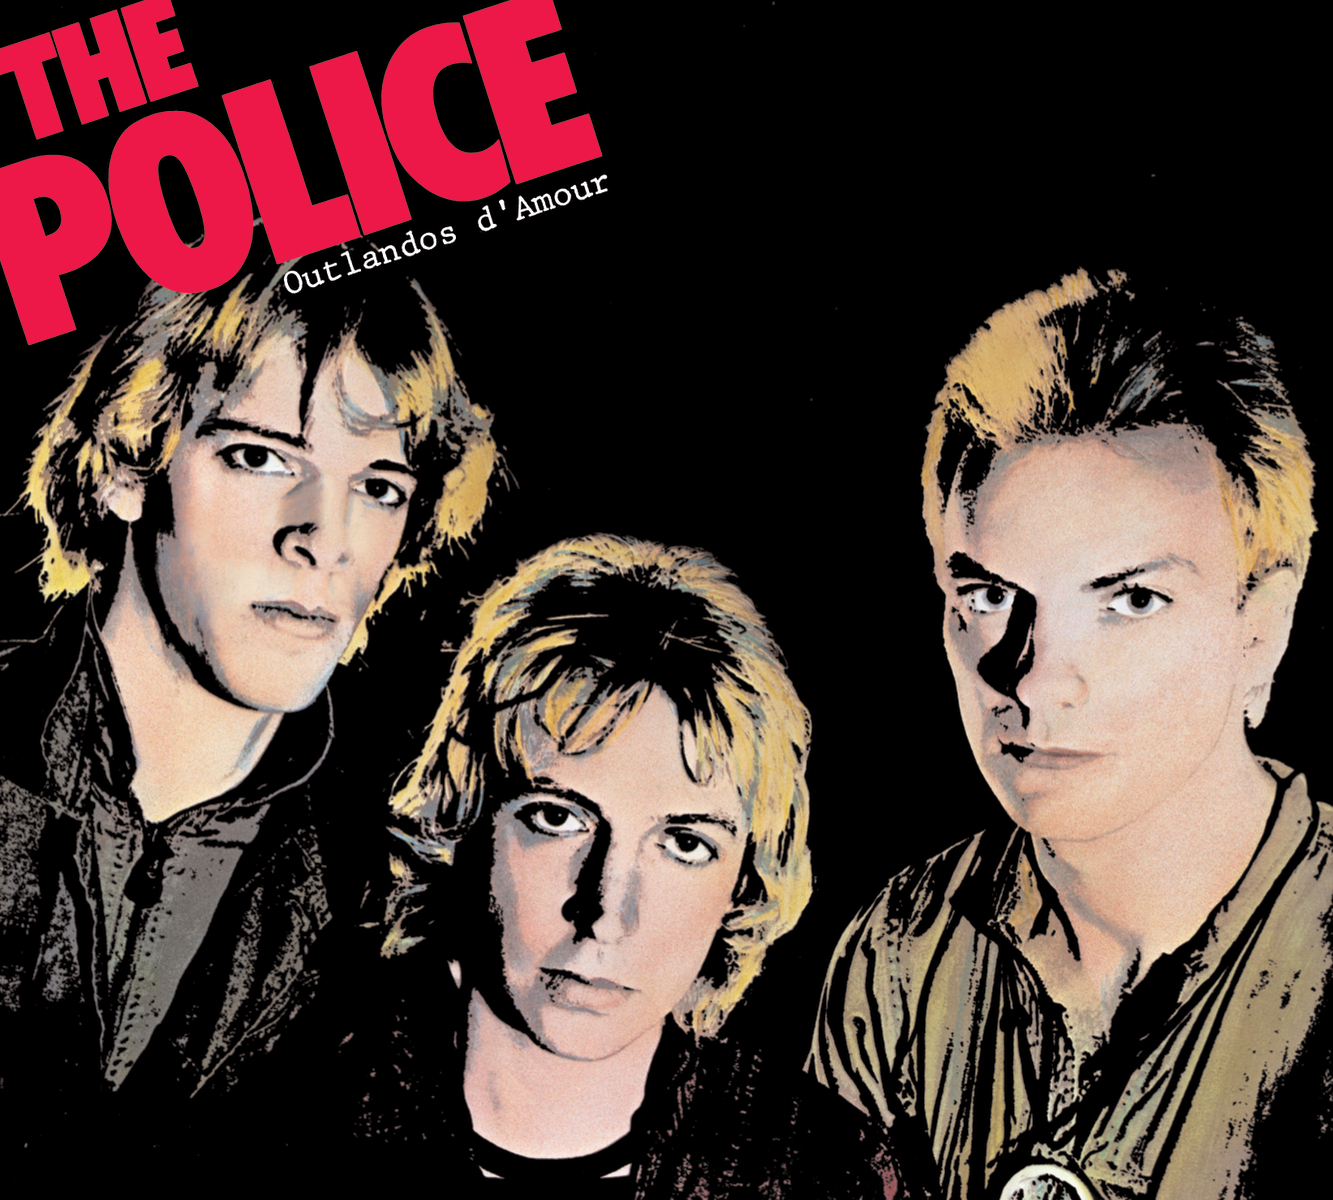 Outlandos d'Amour fue el primer álbum de The Police.